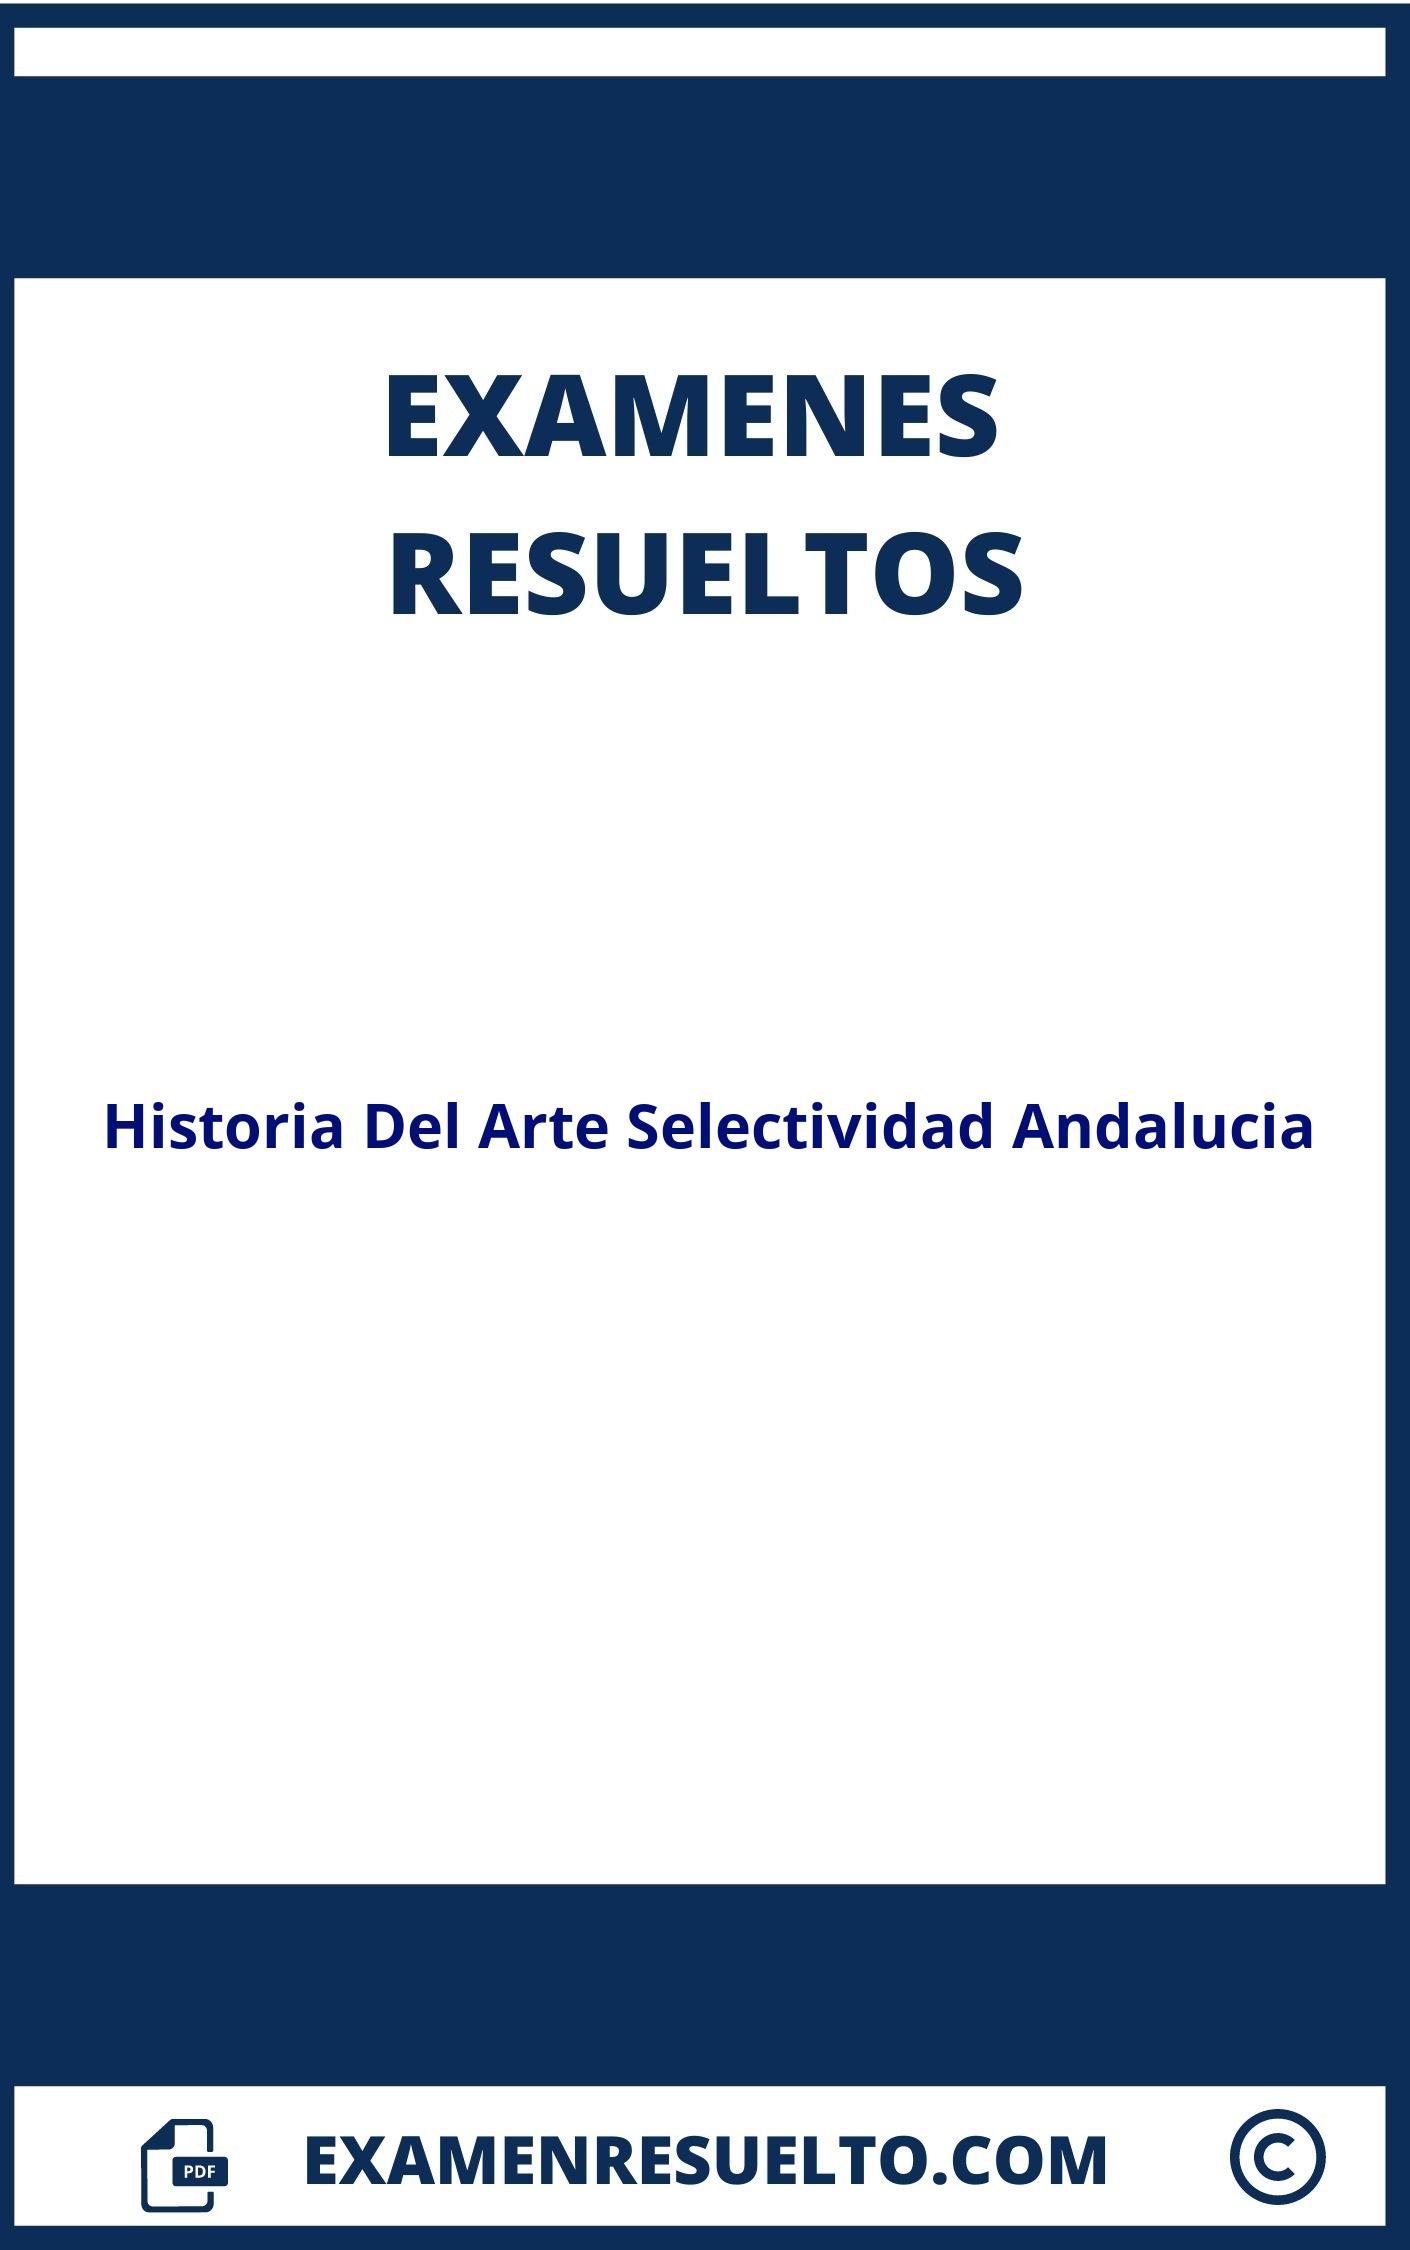 Examenes Historia Del Arte Selectividad Andalucia Resueltos